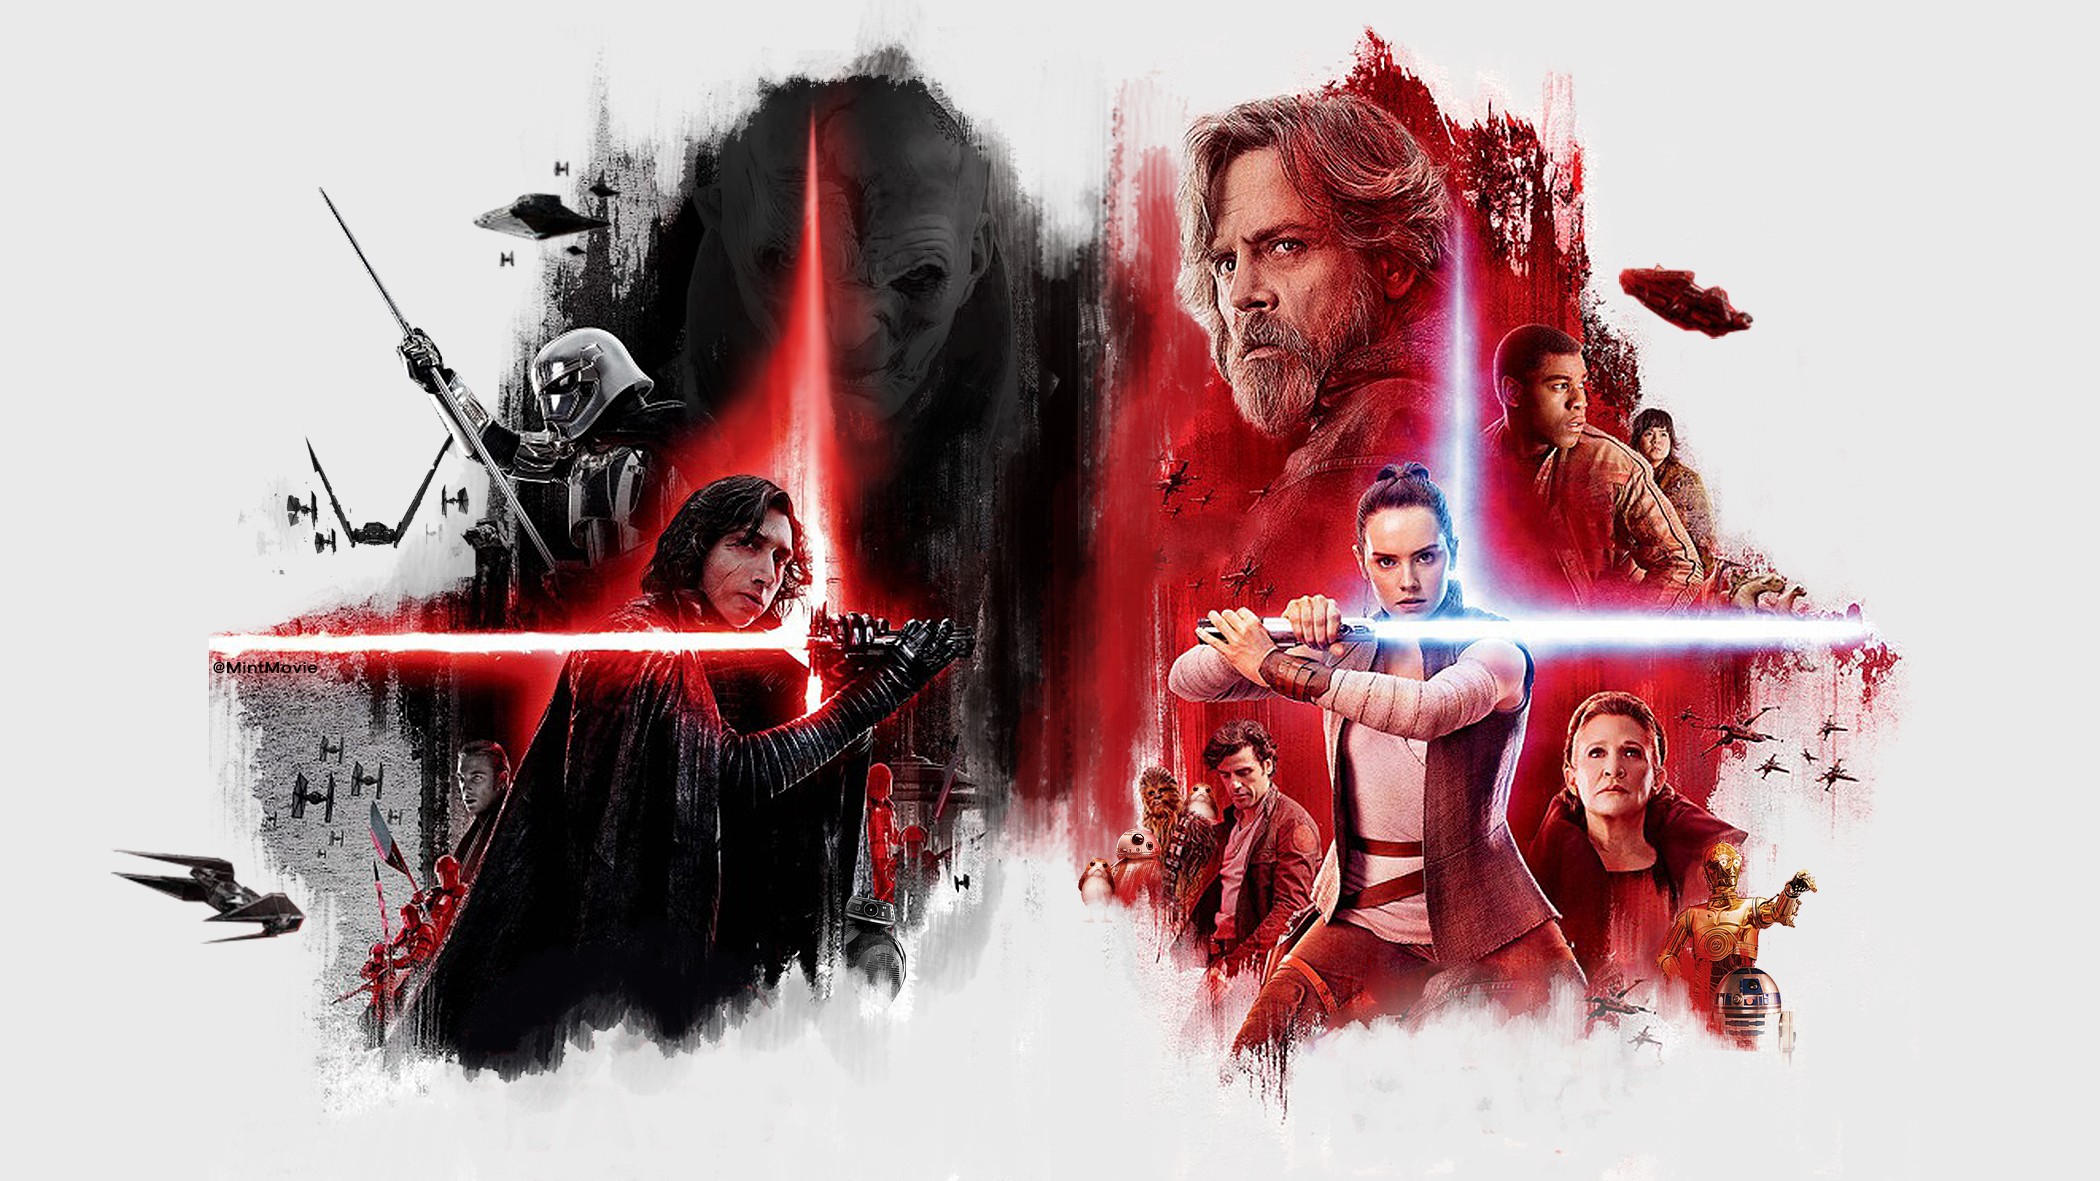 Luke Skywalker, Princess Leia, Kylo Ren, Fan art, Star Wars: The Last Jedi, Movies, Rey (from Star Wars), Lightsaber Wallpaper